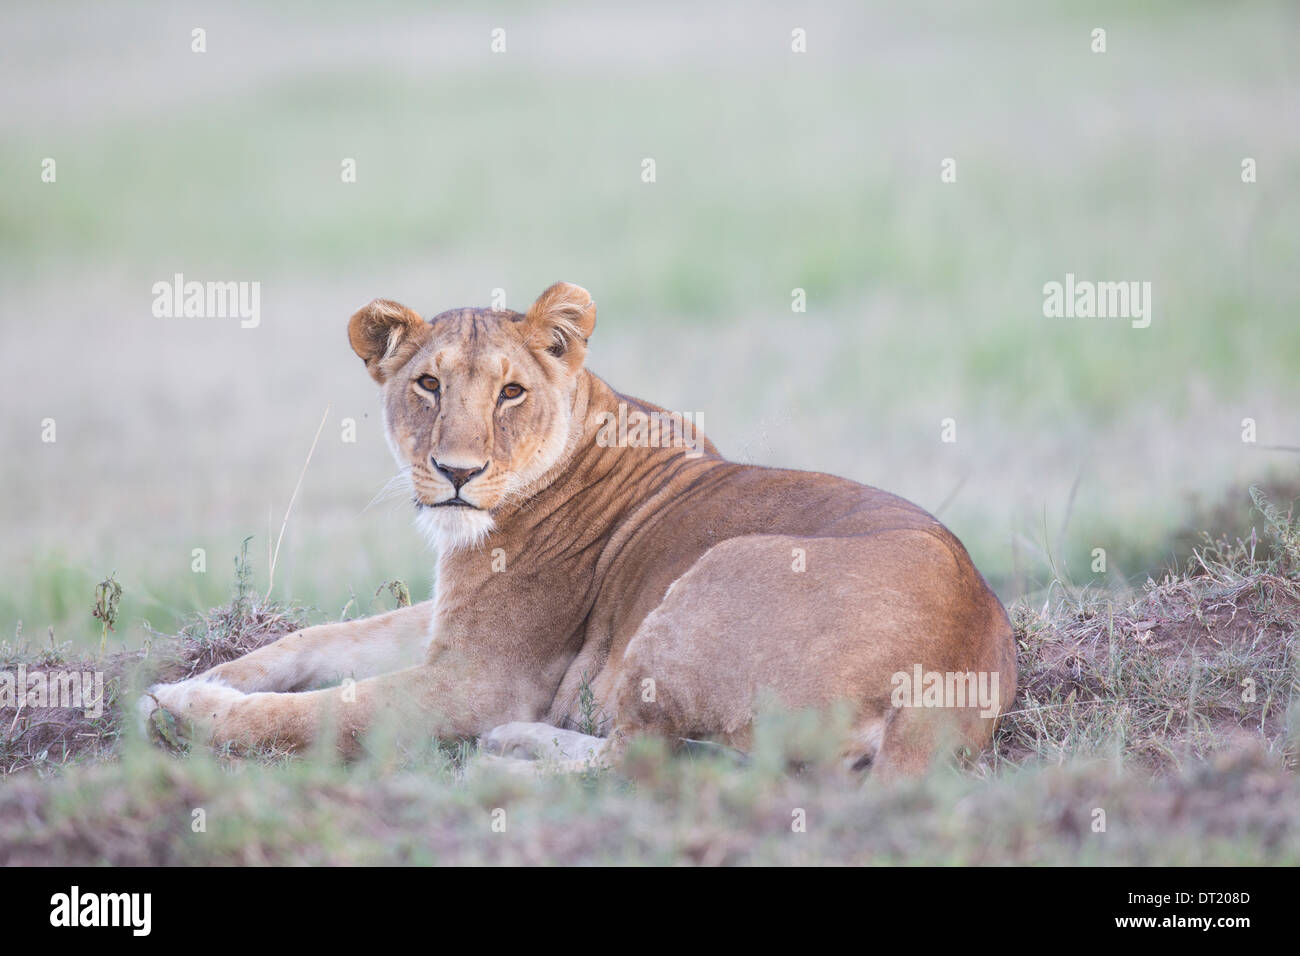 Parte del famoso León León Marsh el orgullo de los Maasai Mara de Kenia (Panthera leo) Foto de stock